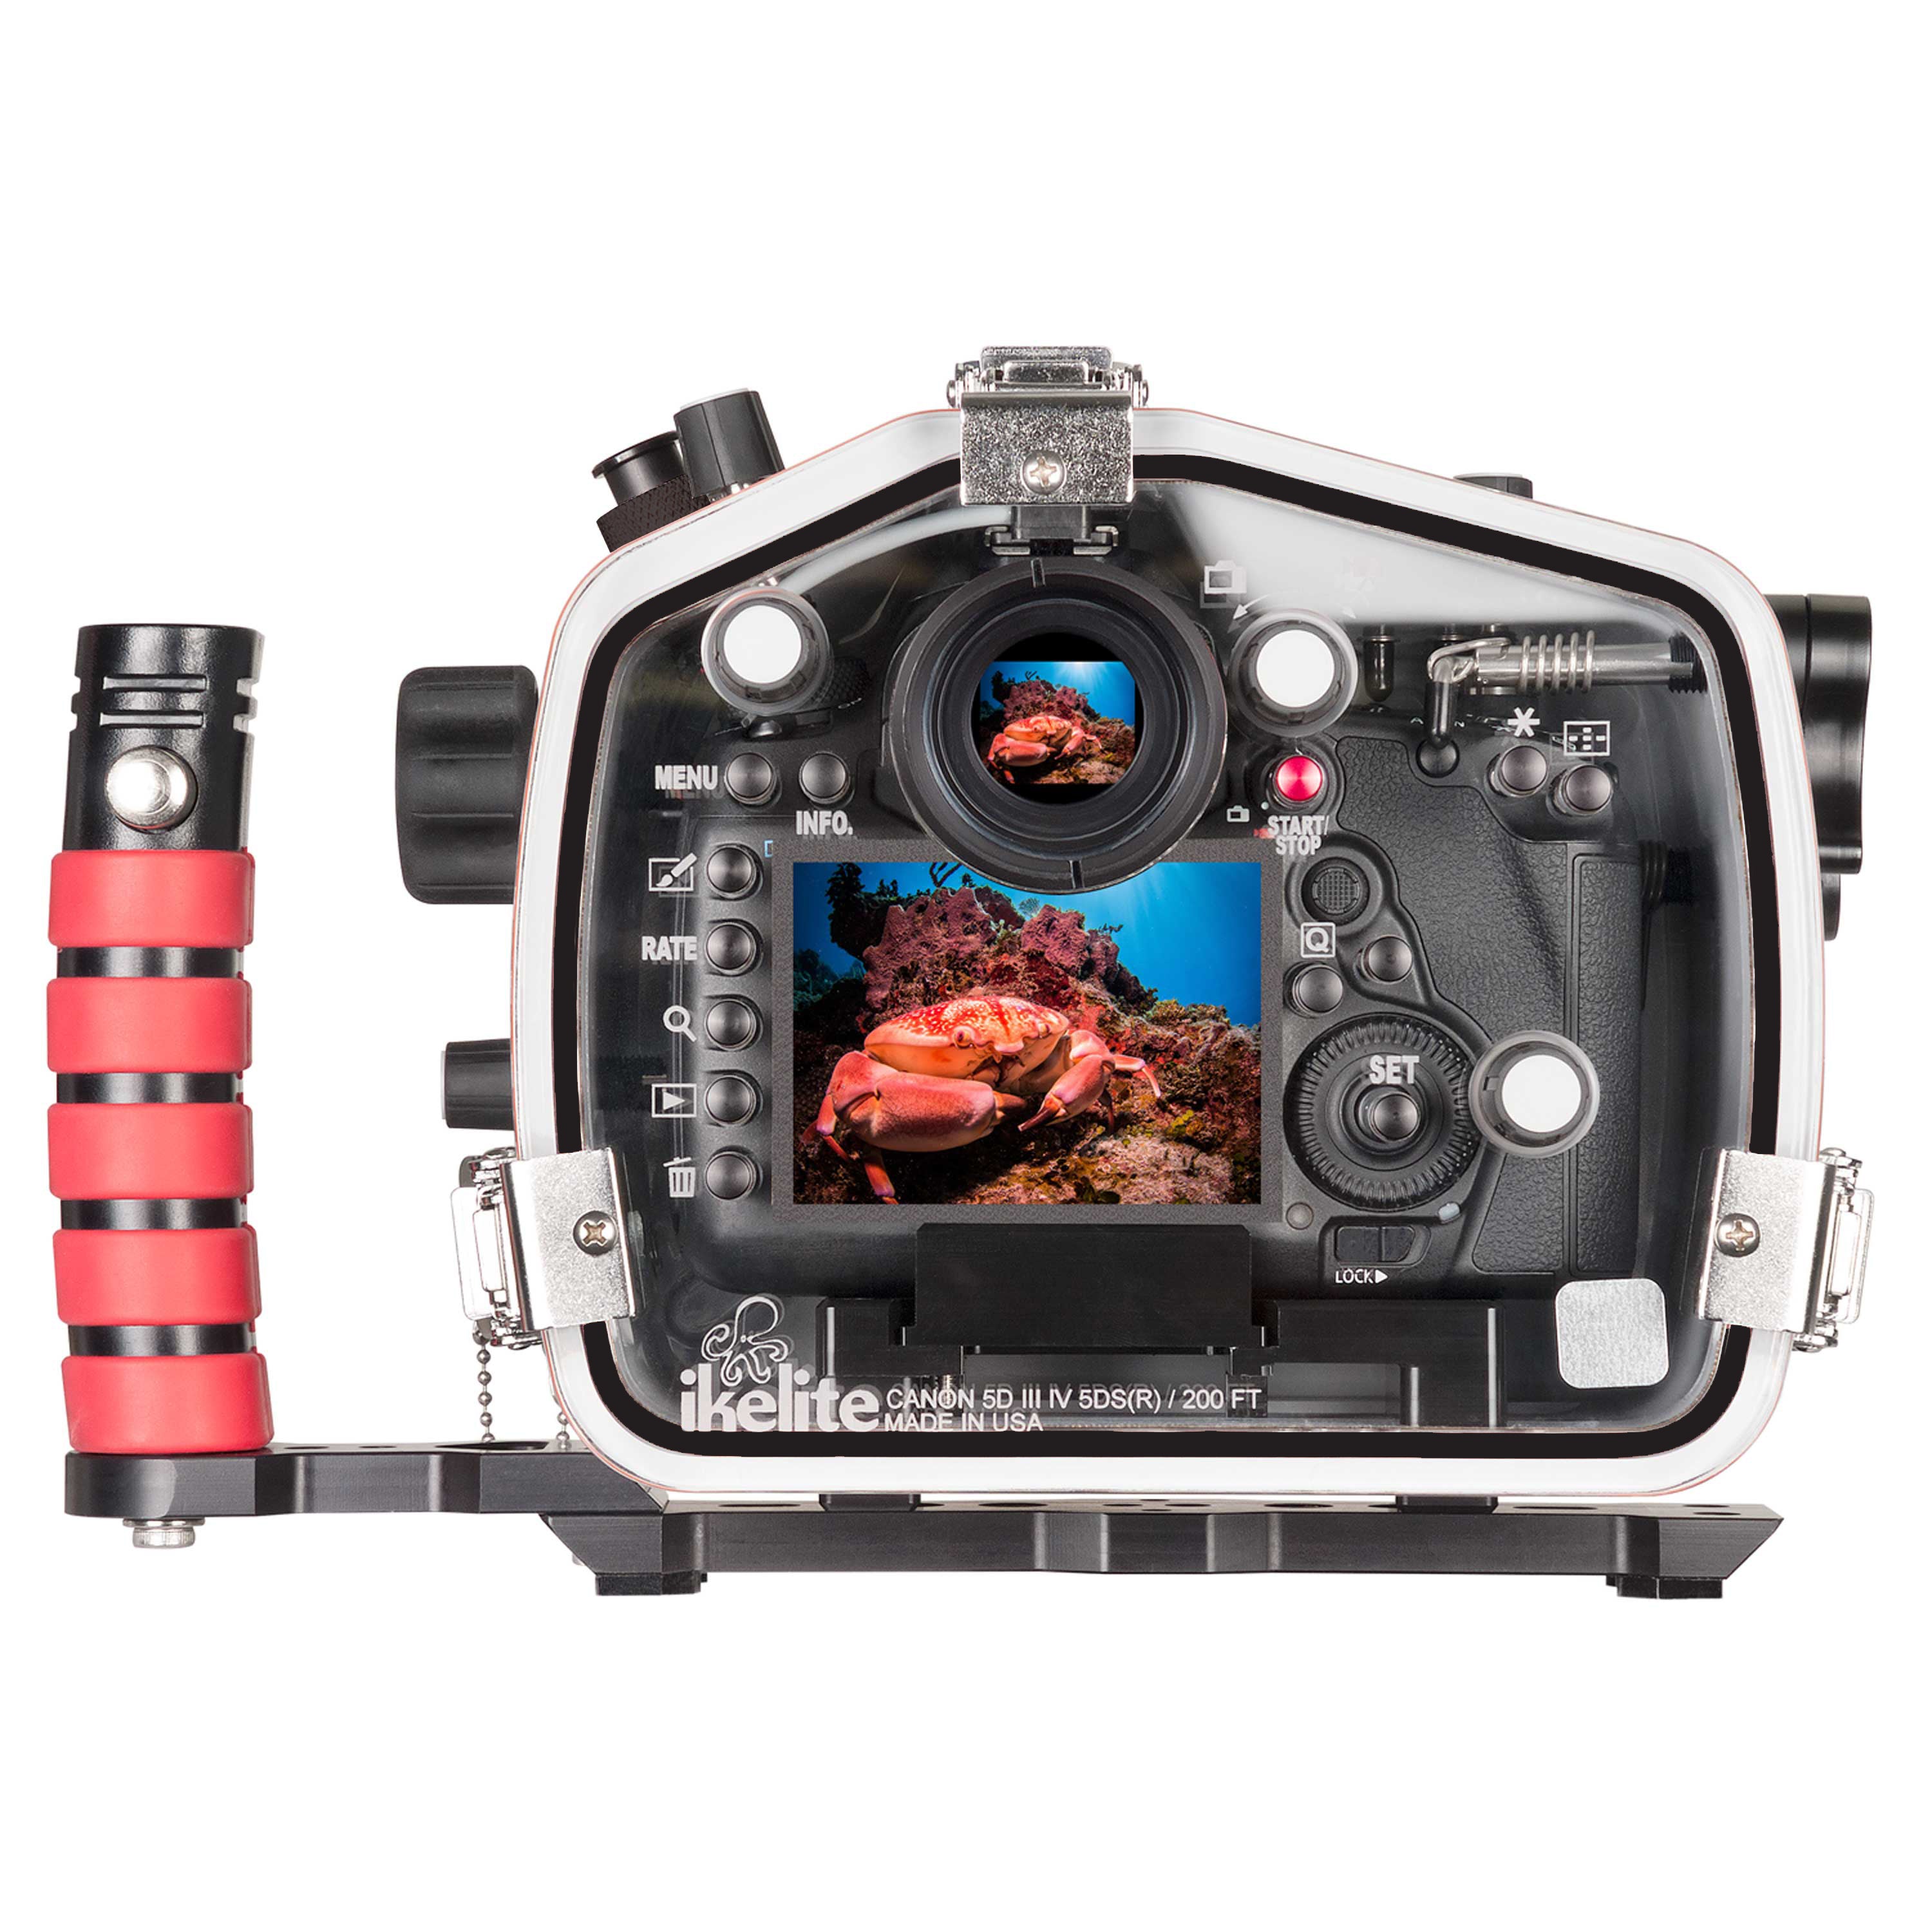 Geweldig Schiereiland verwijzen 200DL Underwater Housing for Canon EOS 5D Mark III, 5D Mark IV, 5DS, 5